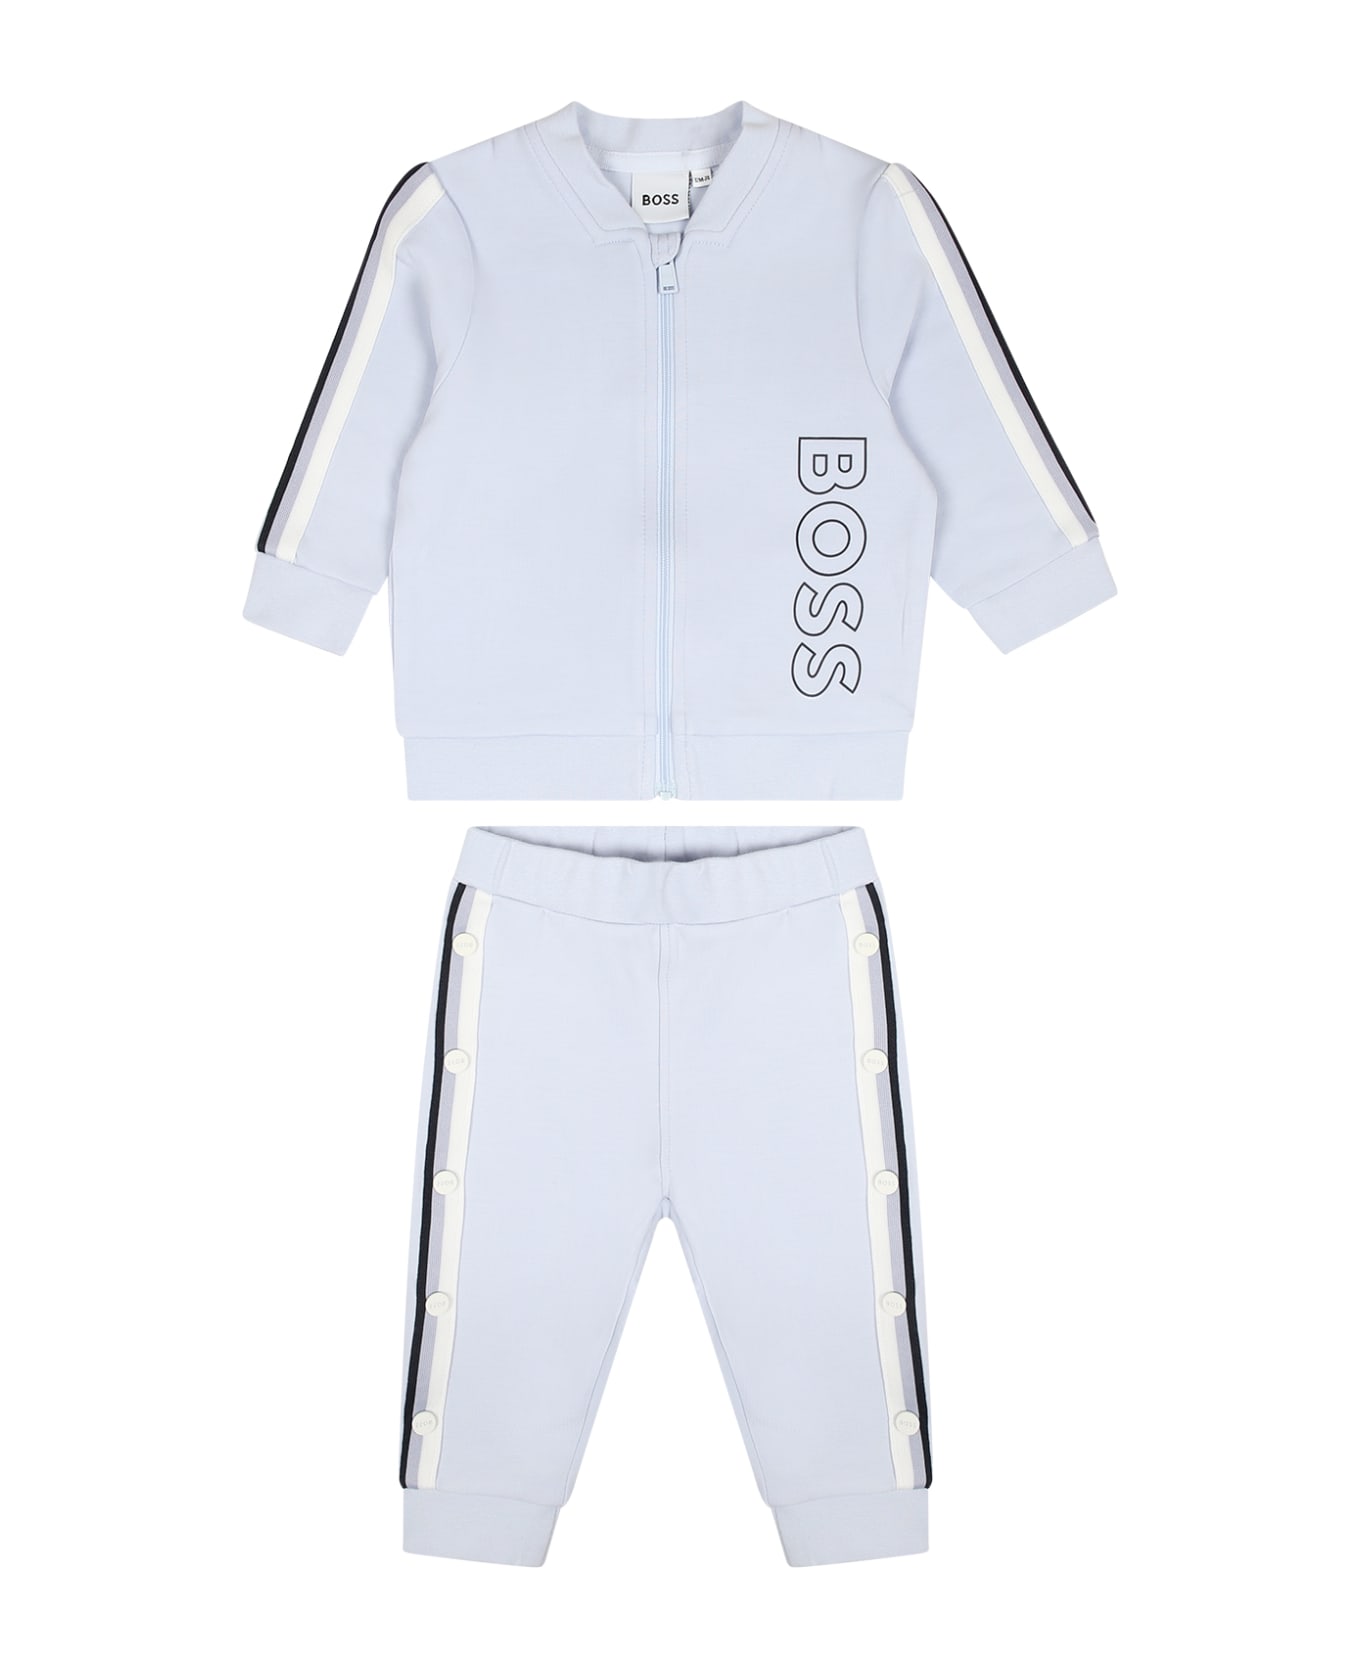 Hugo Boss Light Blue Sport Suit Set For Baby Boy - Light Blue ボトムス